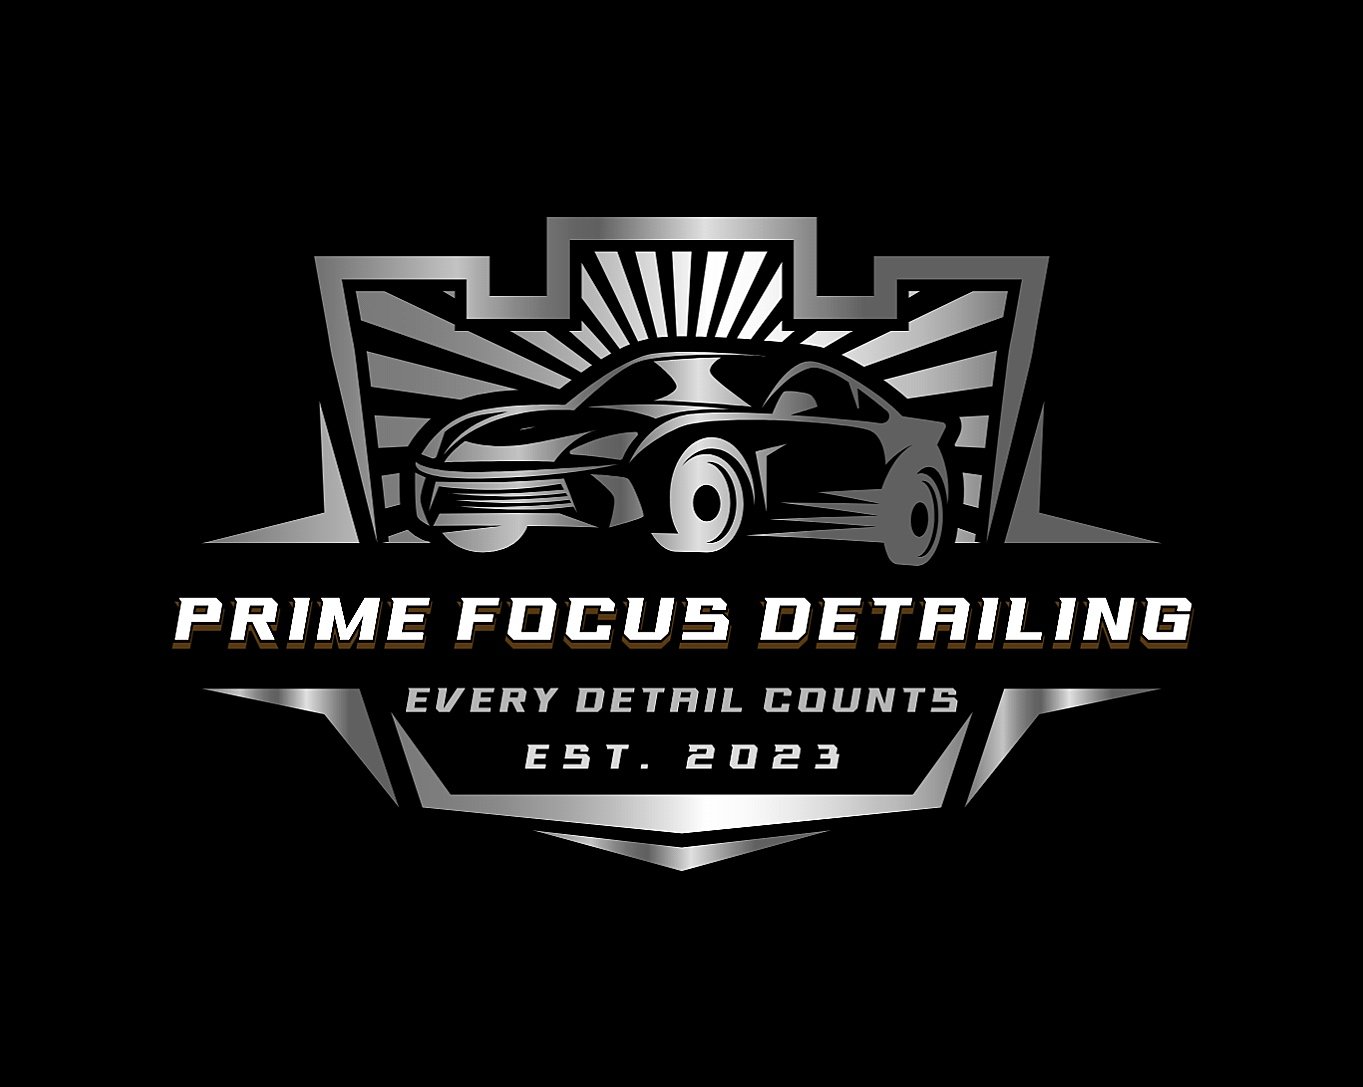 Prime Focus Detailing